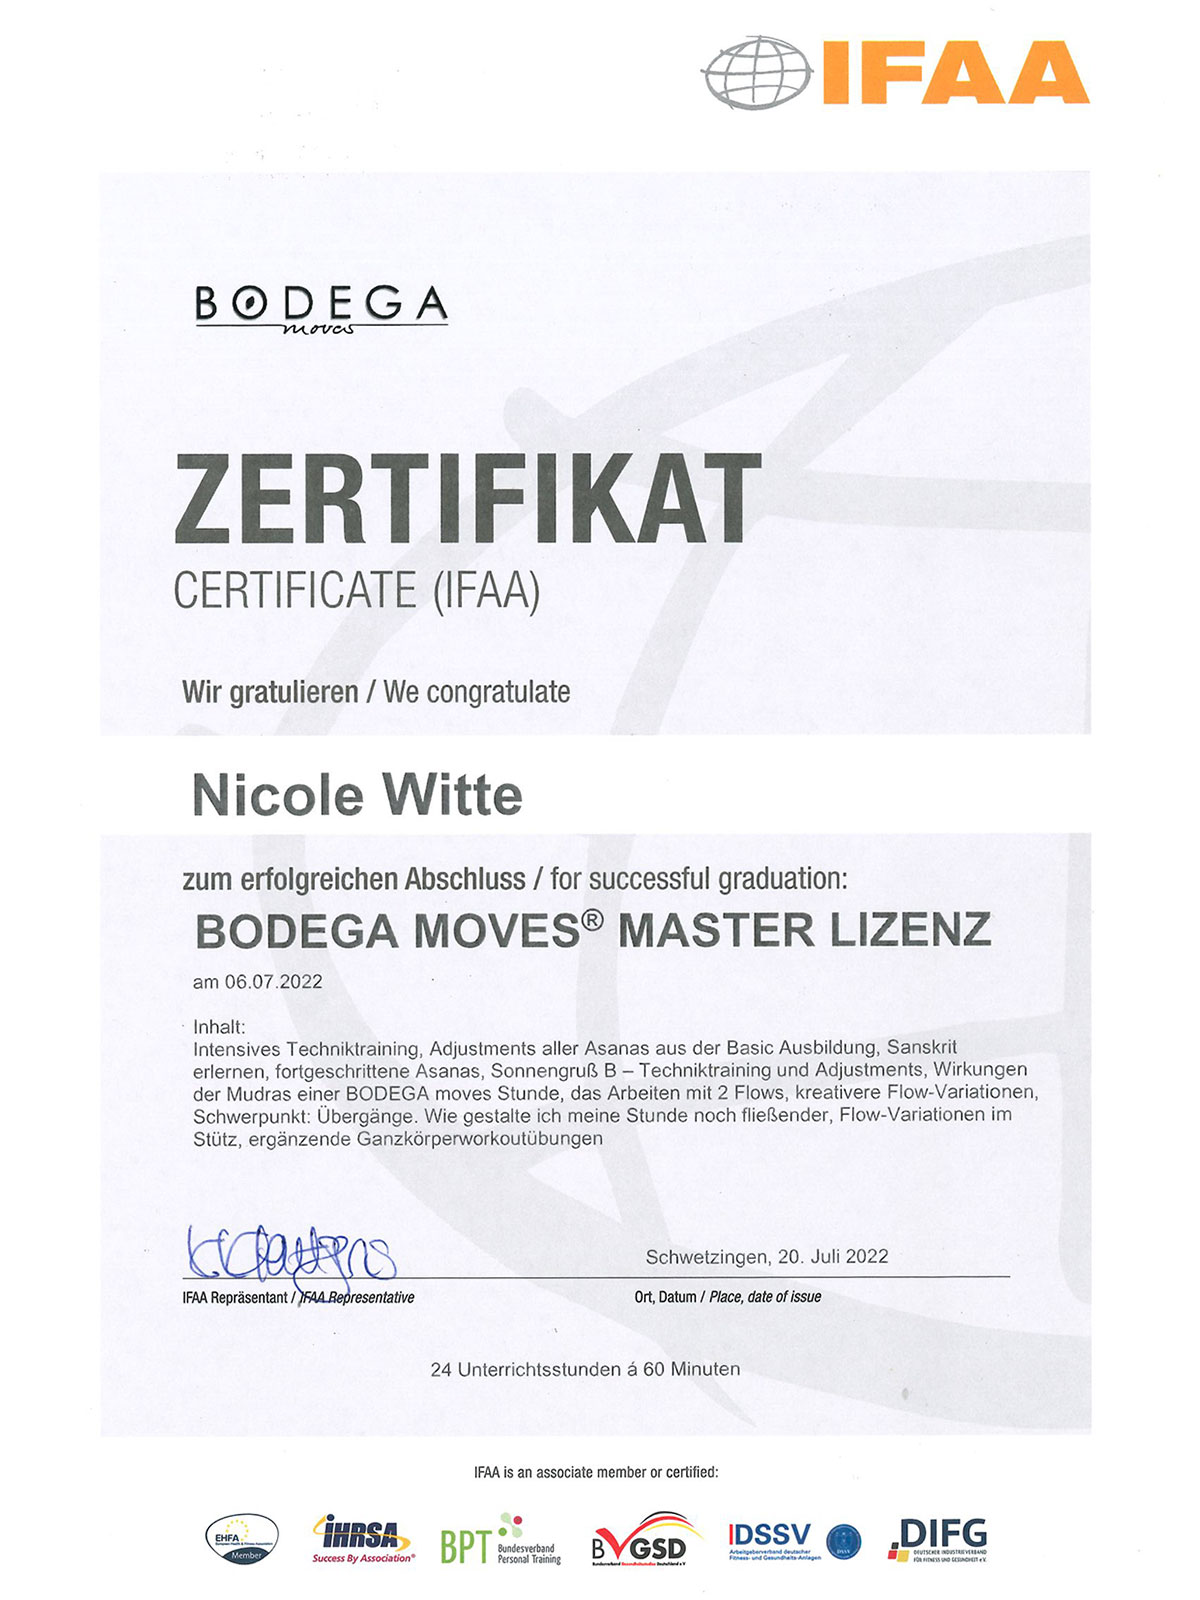 Bodega Moves Master Lizenz